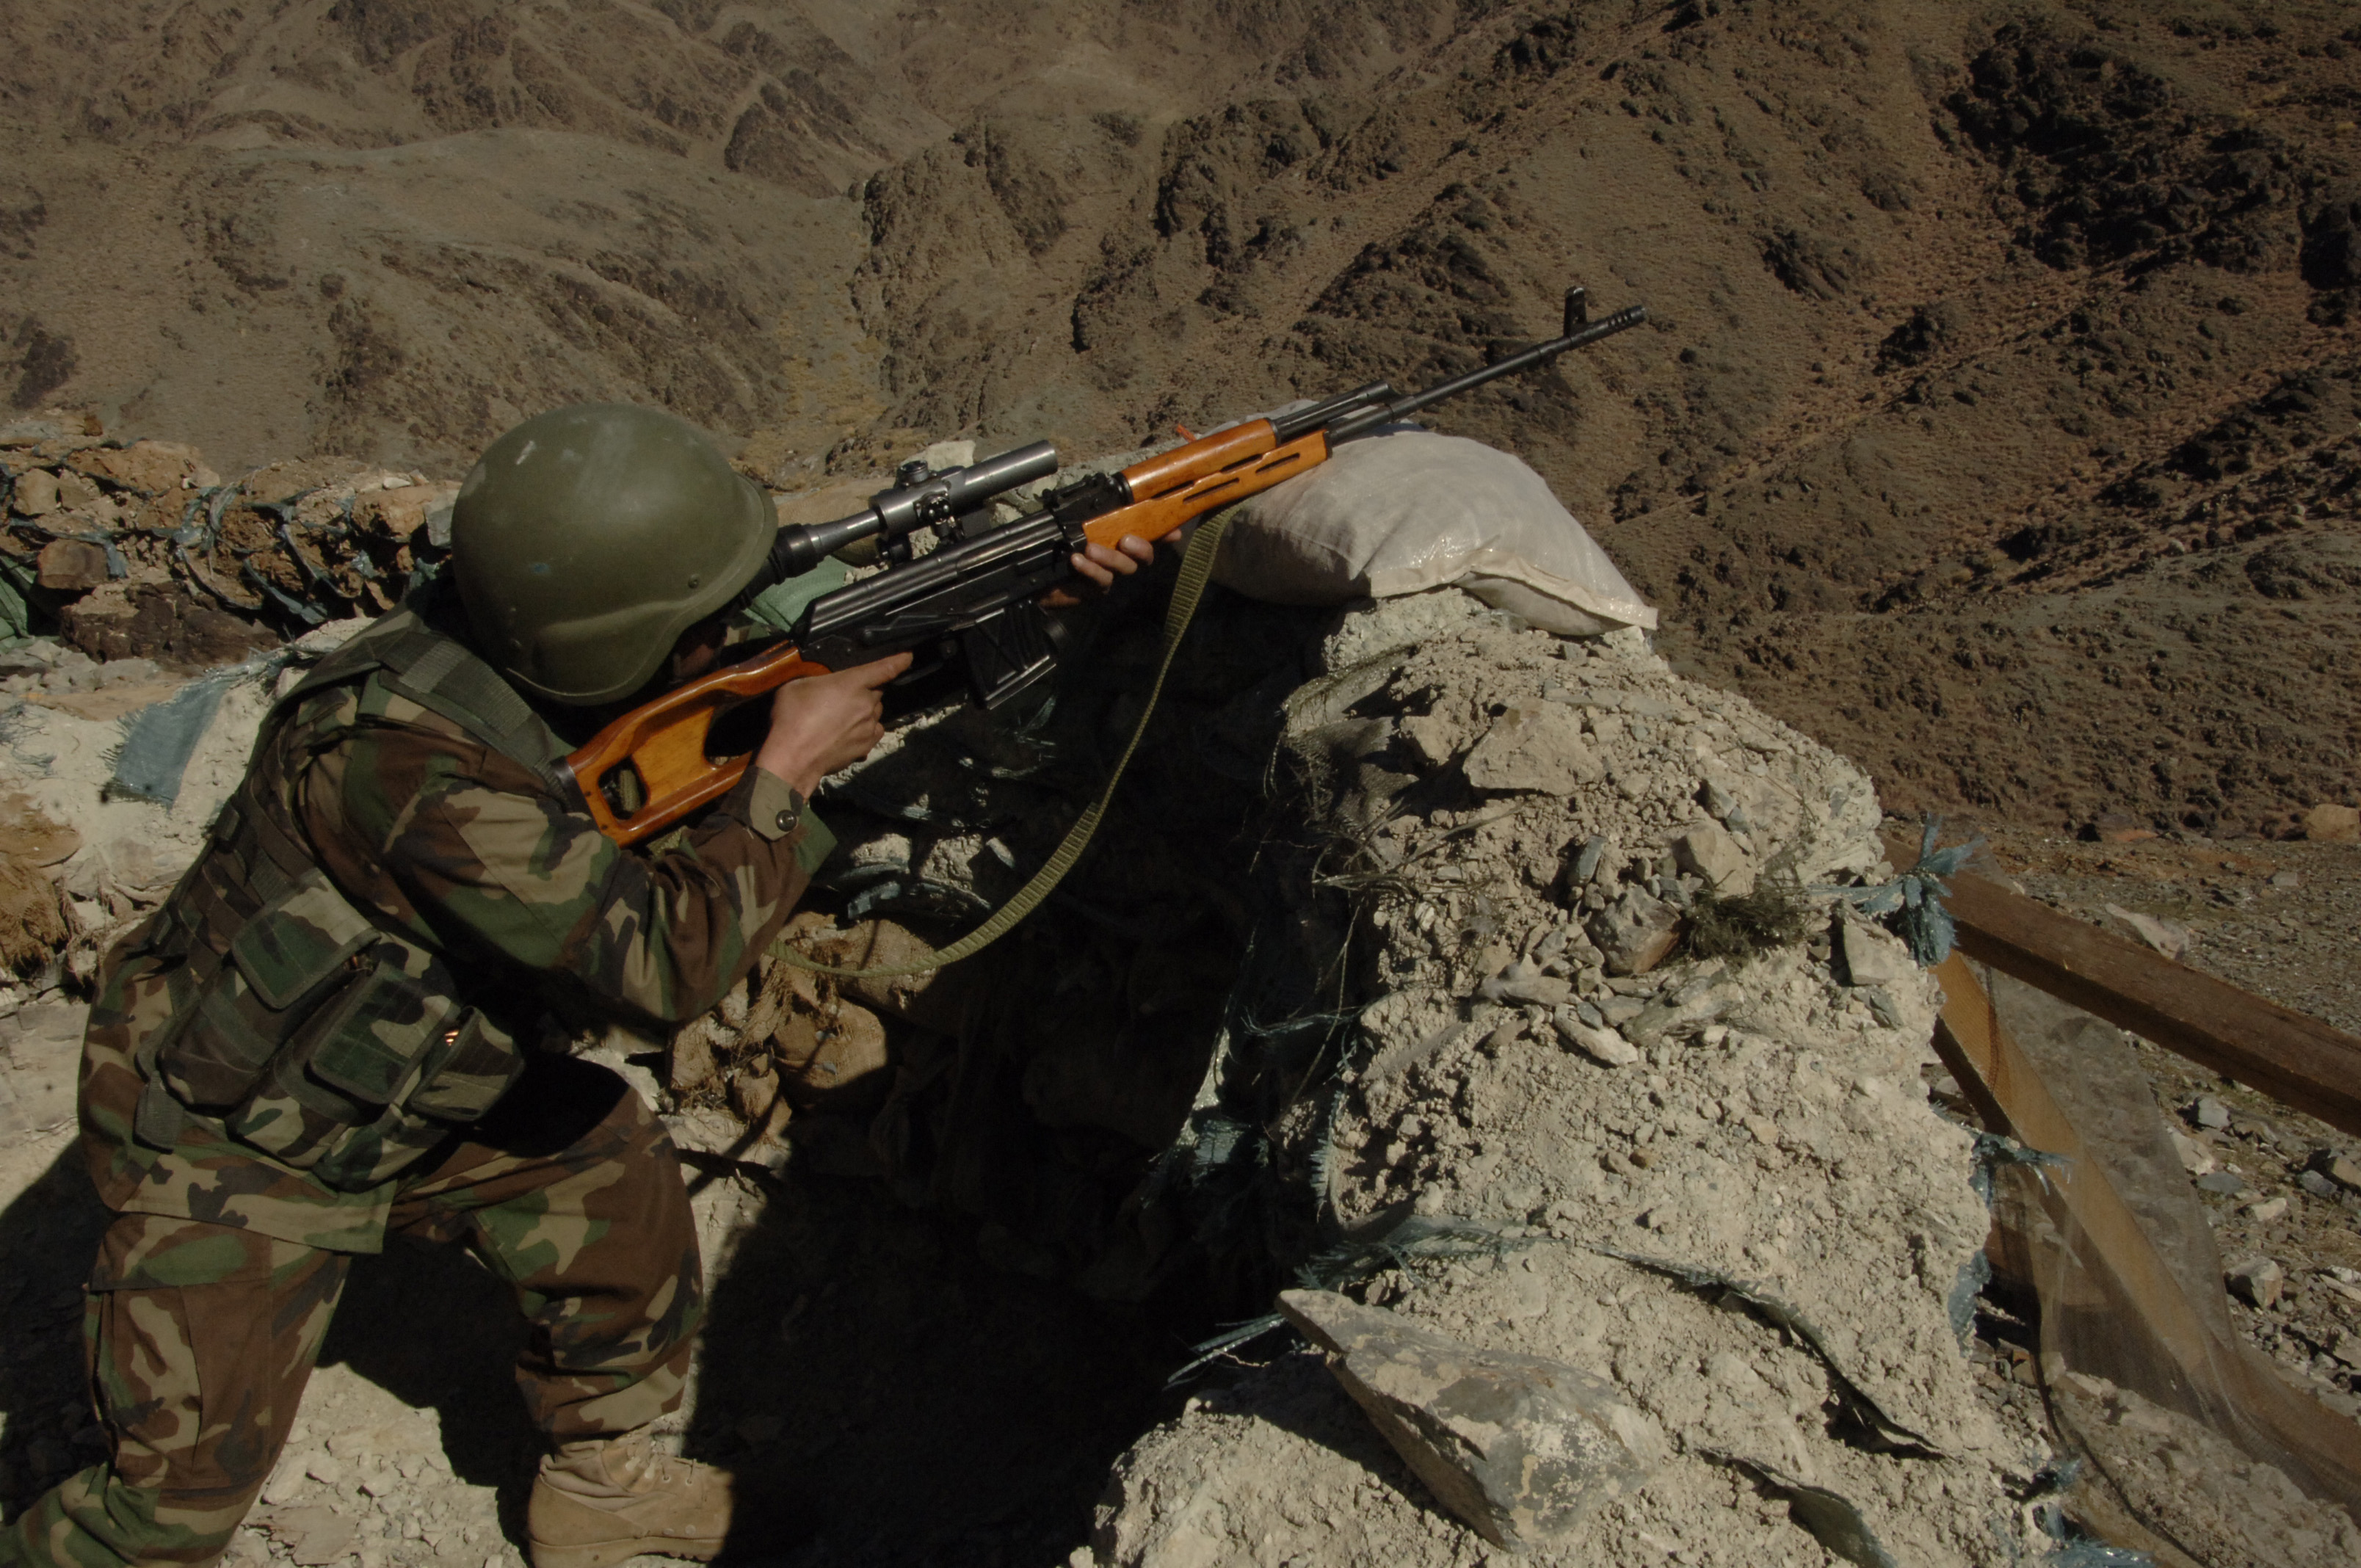 7 戦場風景画像 20枚 スナイパーライフル Psl タブク ツァスタバ M76狙撃銃 戦争 兵士 写真 壁紙 風景と少女による可能世界